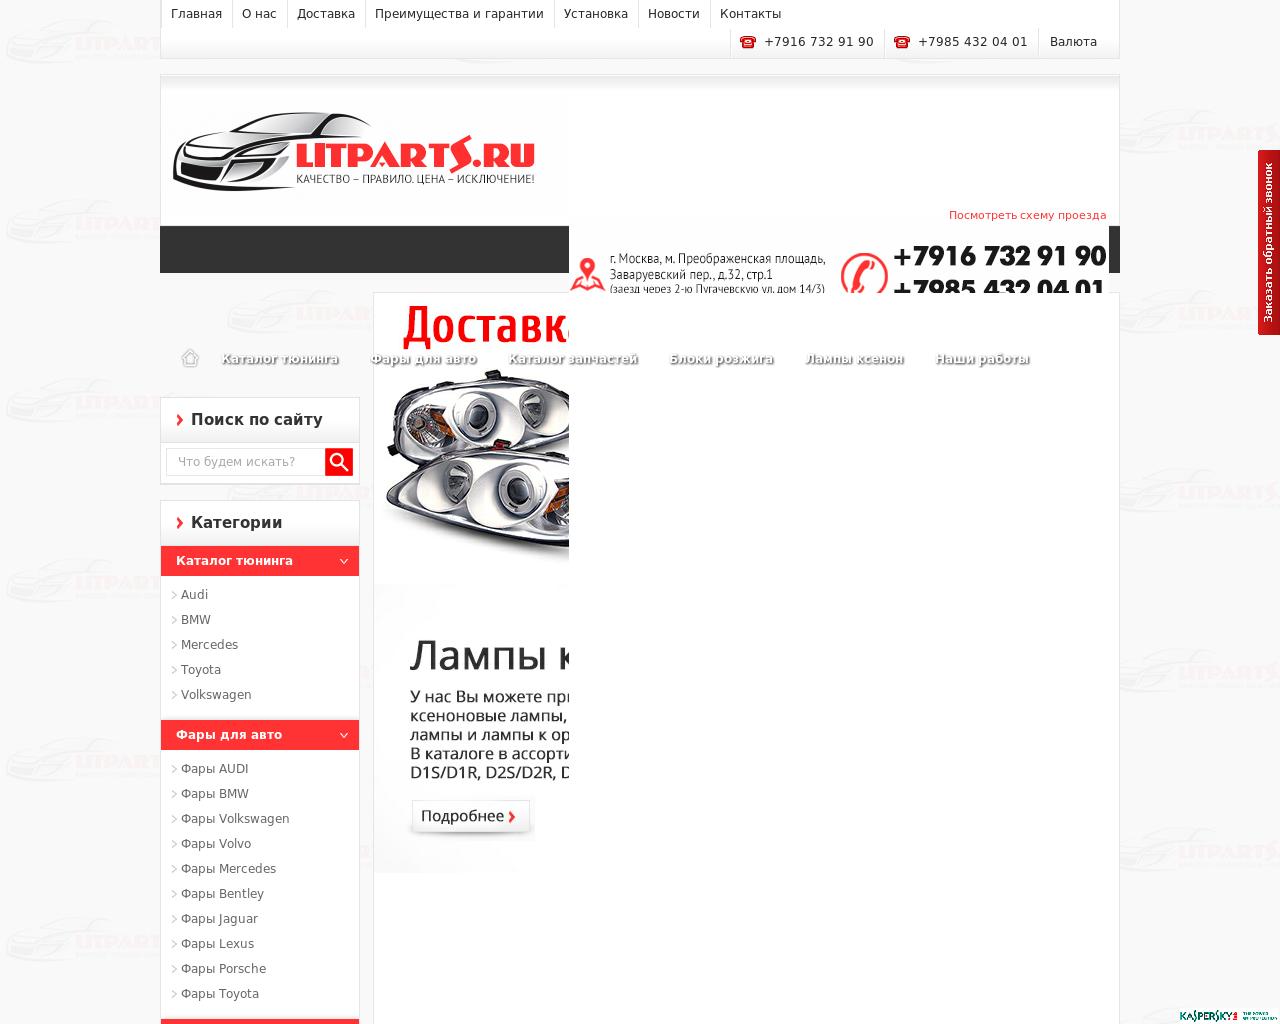 Изображение сайта litparts.ru в разрешении 1280x1024